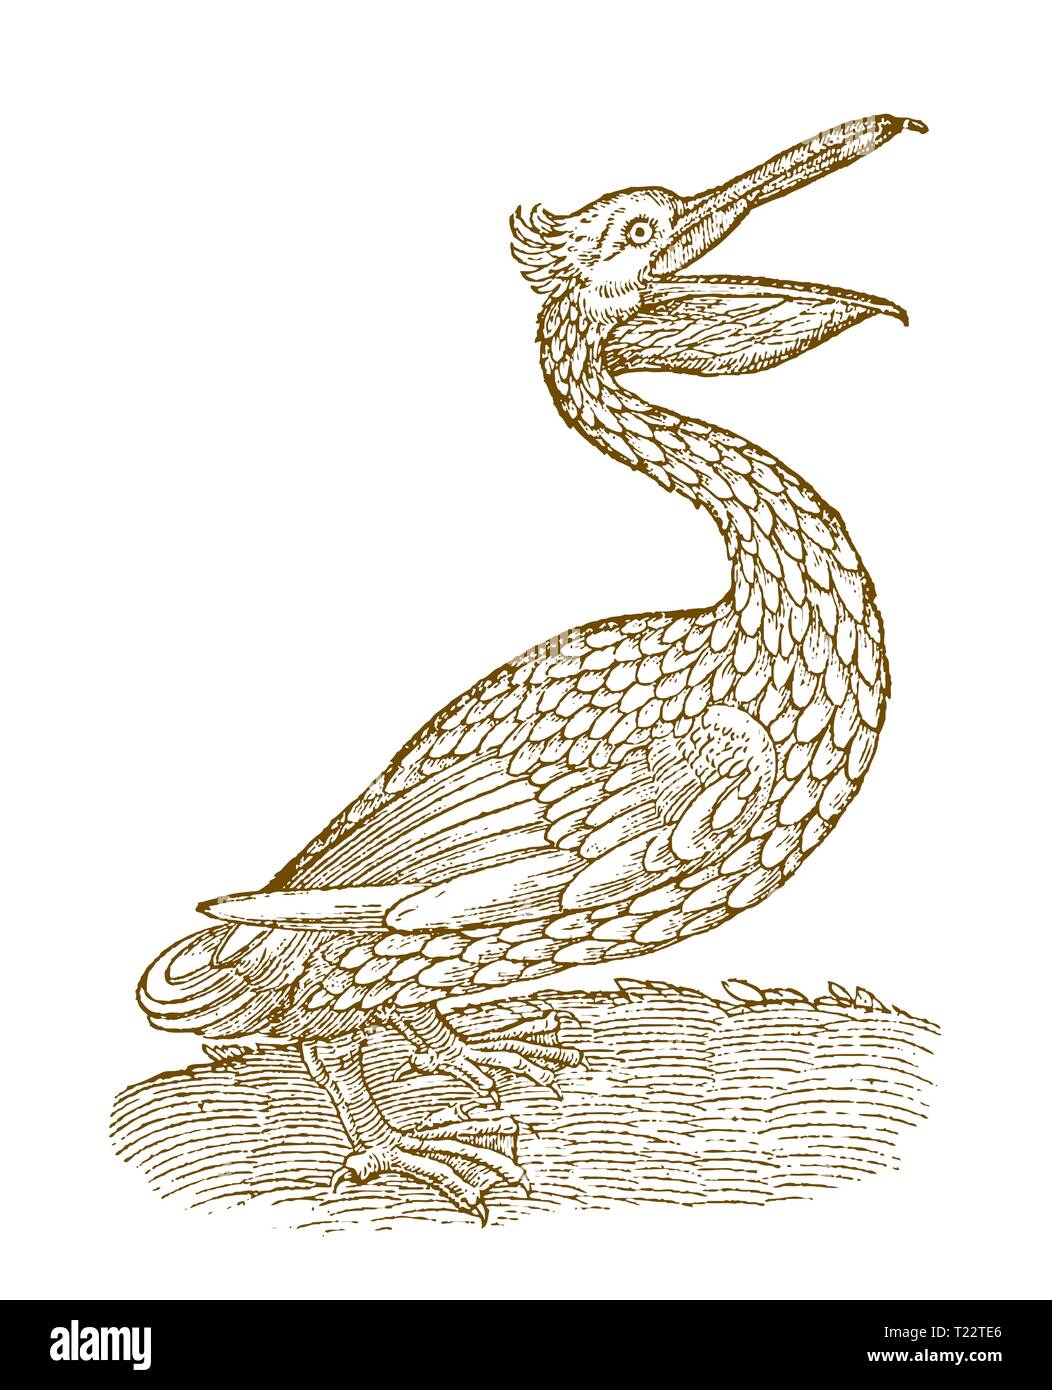 Pelican en vue de côté avec le bec ouvert. Après une gravure Illustration historique du 16e siècle Illustration de Vecteur